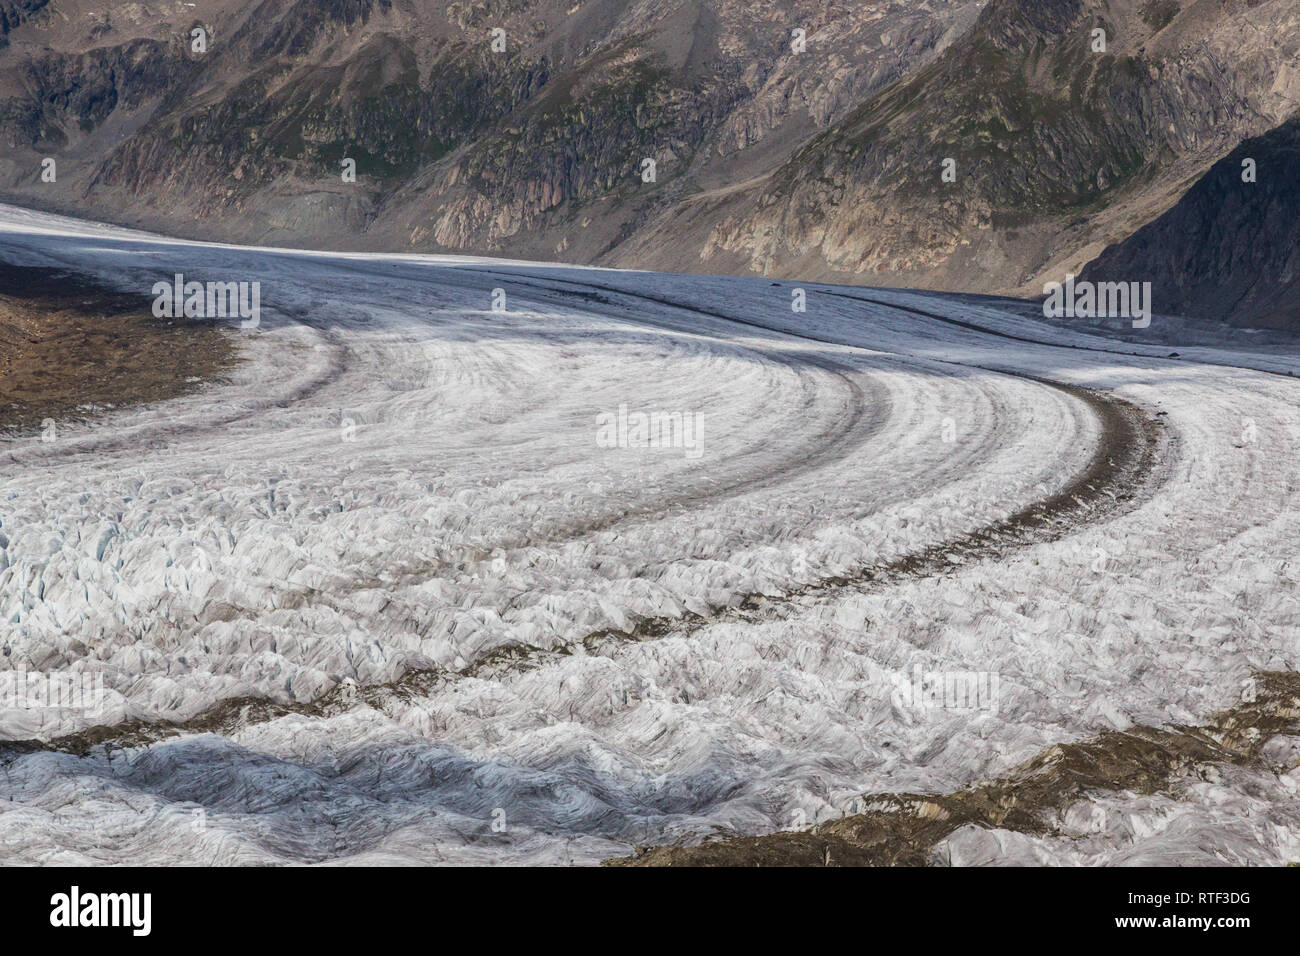 Vista superior de la detallada sobre el flujo natural de hielo del glaciar Aletsch, rocas y grietas Foto de stock